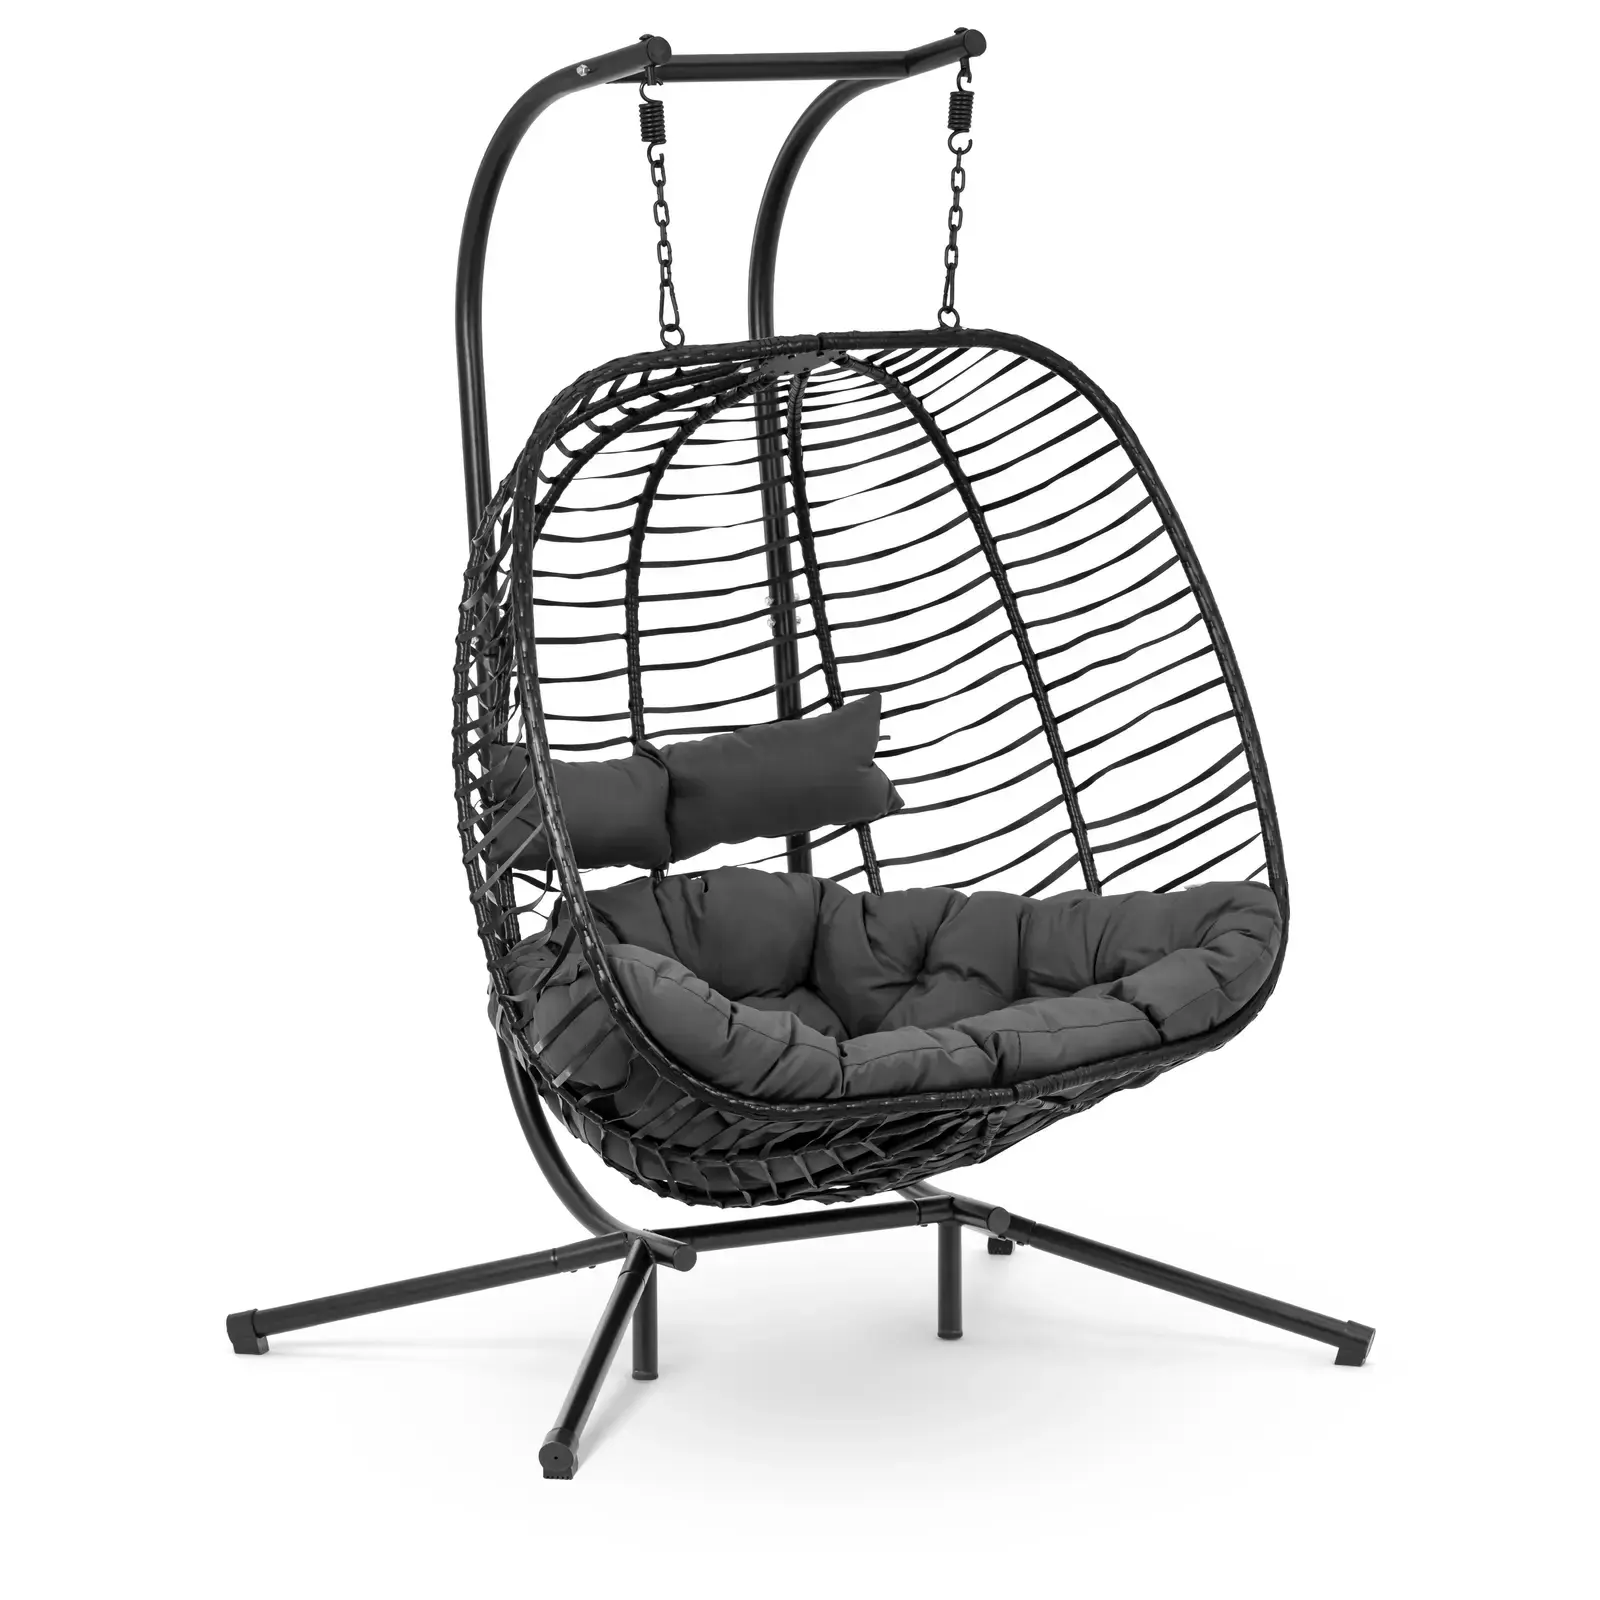 Uniprodo Buiten hangstoel met frame - voor twee personen - opklapbare zitting - zwart/grijs